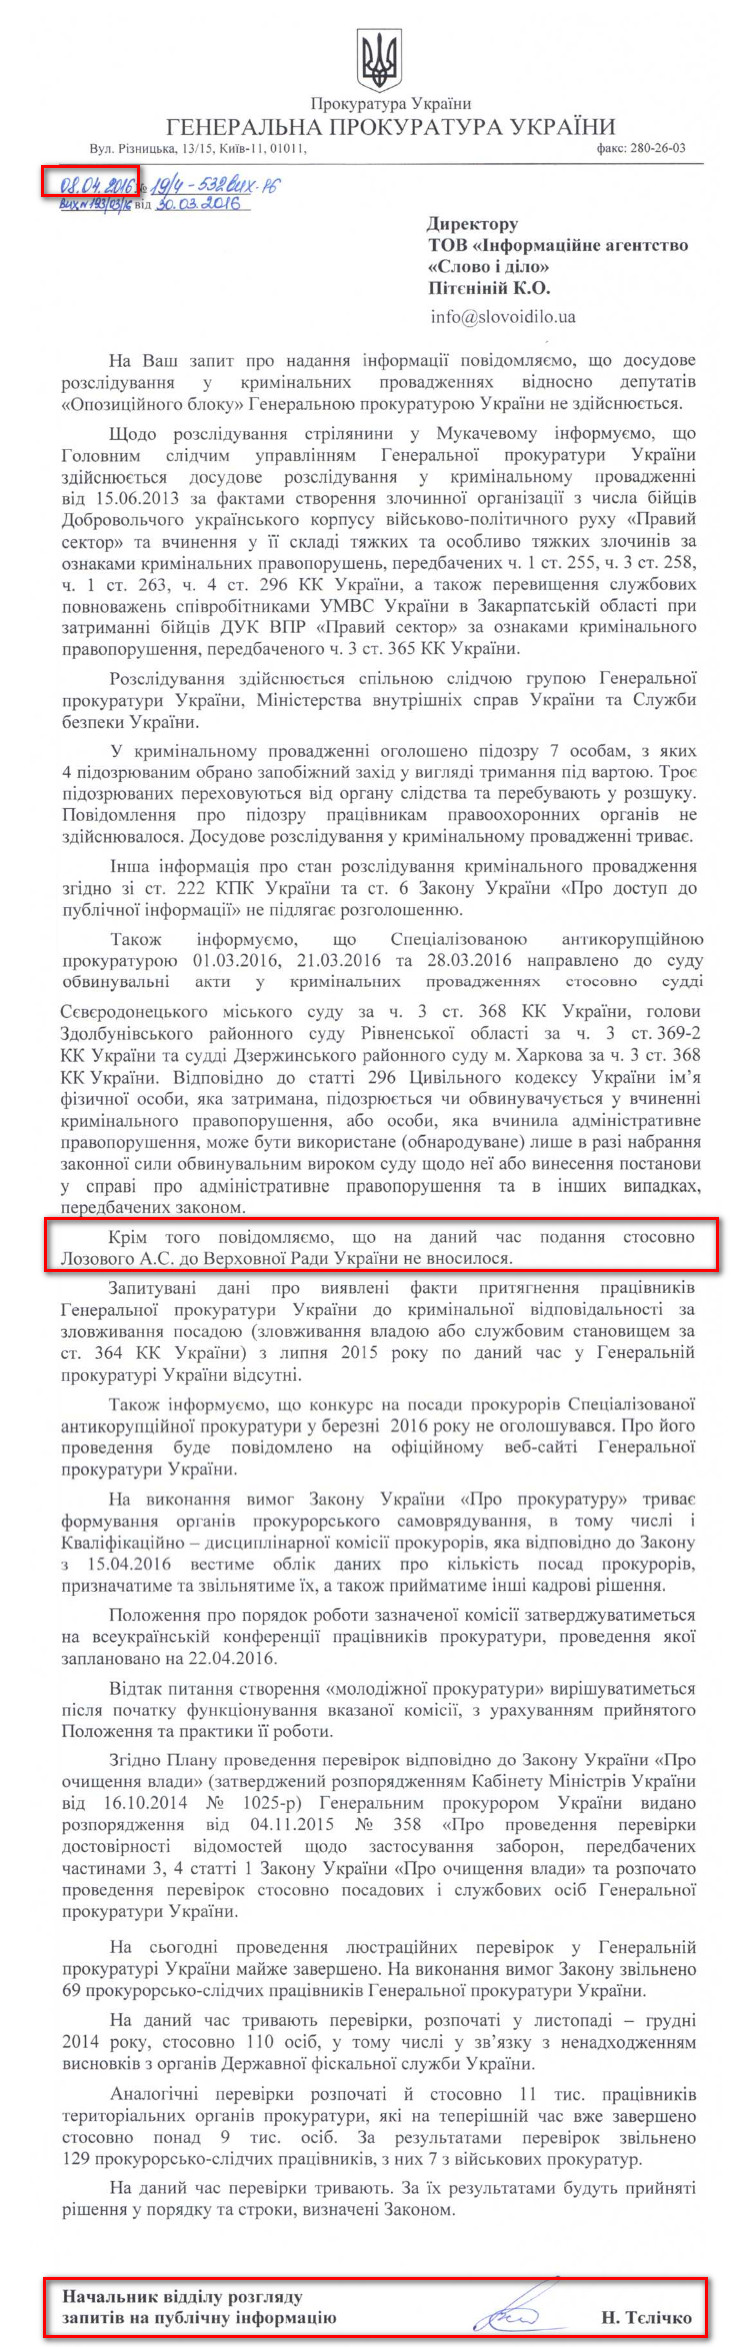 Лист начальника відділу розгляду запитів на публічну інформацію ГПУ Тєлічко Н. від 8 квітня 2016 року